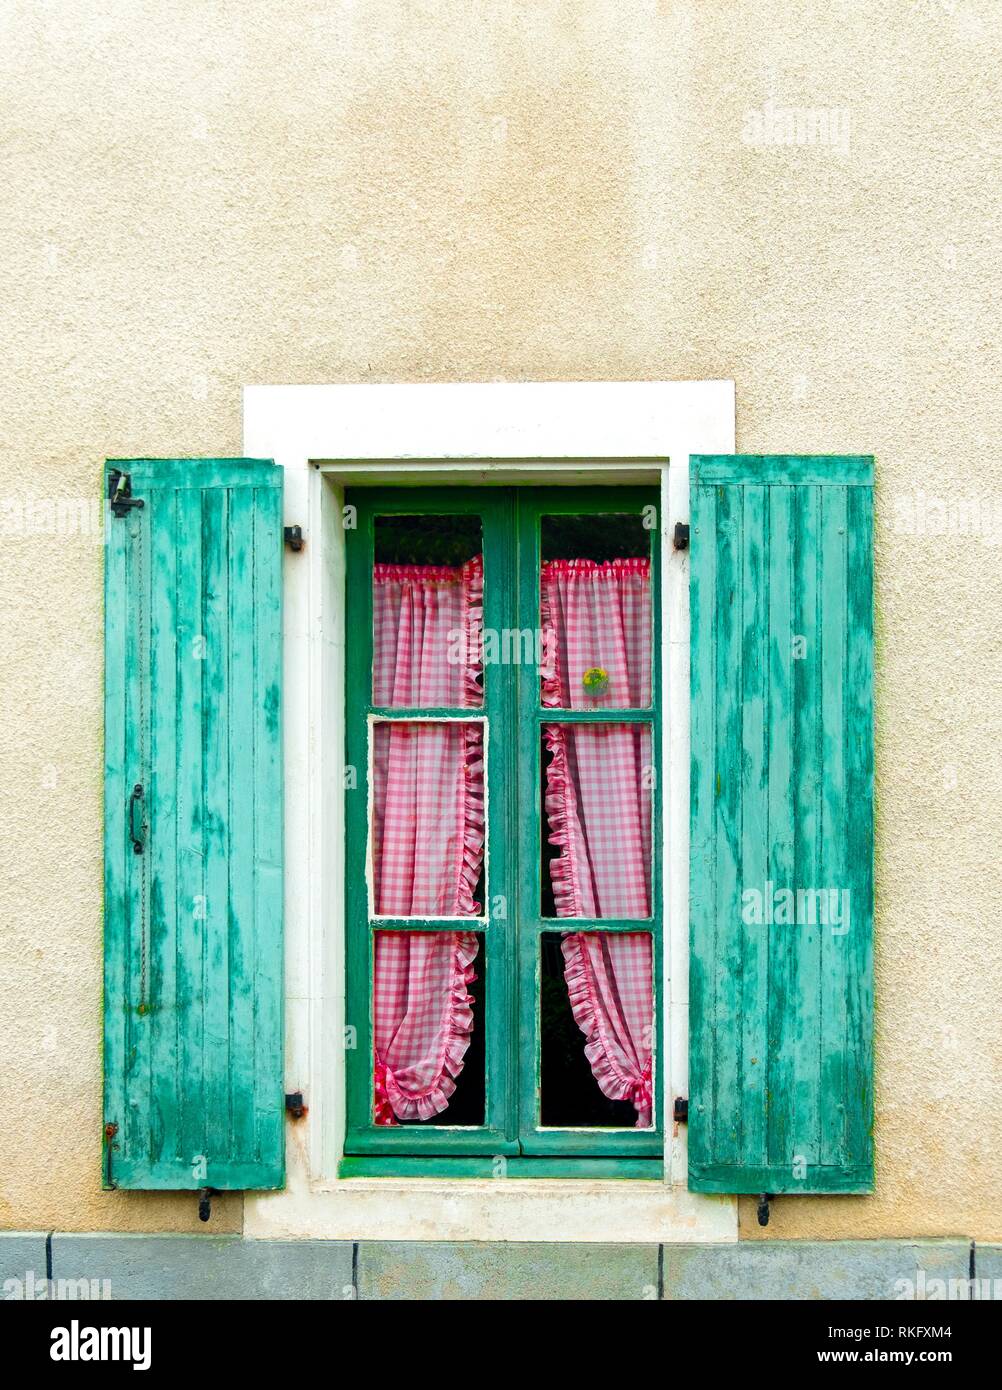 France, Occitanie, Haute Garonne, village window at Mazères sur Salat. Stock Photo